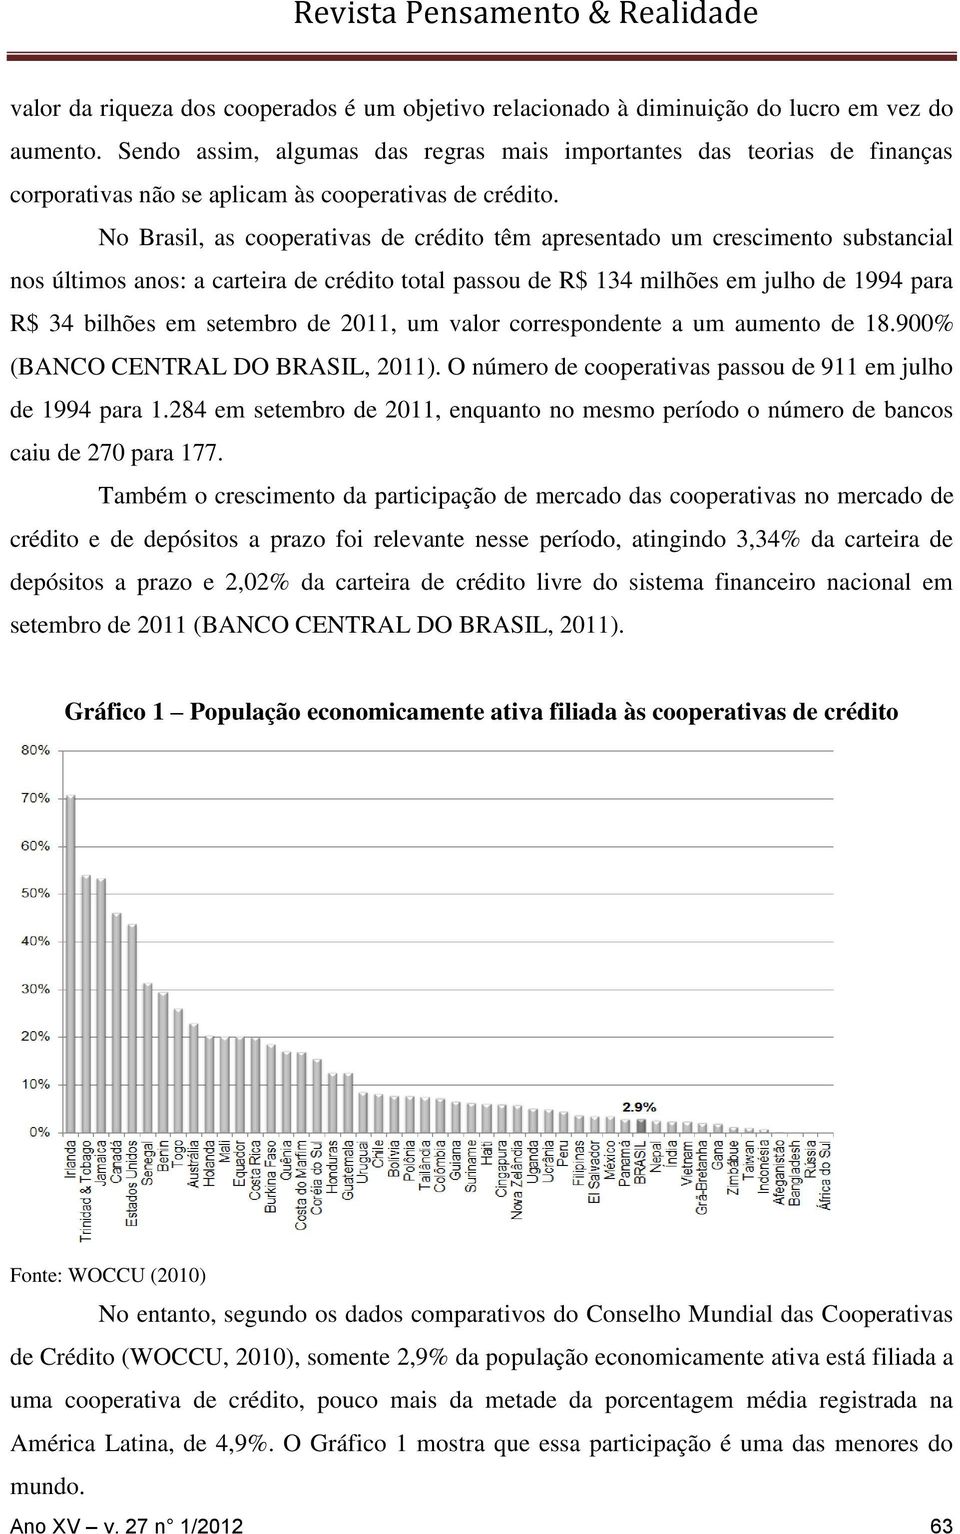 No Brasil, as cooperativas de crédito têm apresentado um crescimento substancial nos últimos anos: a carteira de crédito total passou de R$ 134 milhões em julho de 1994 para R$ 34 bilhões em setembro